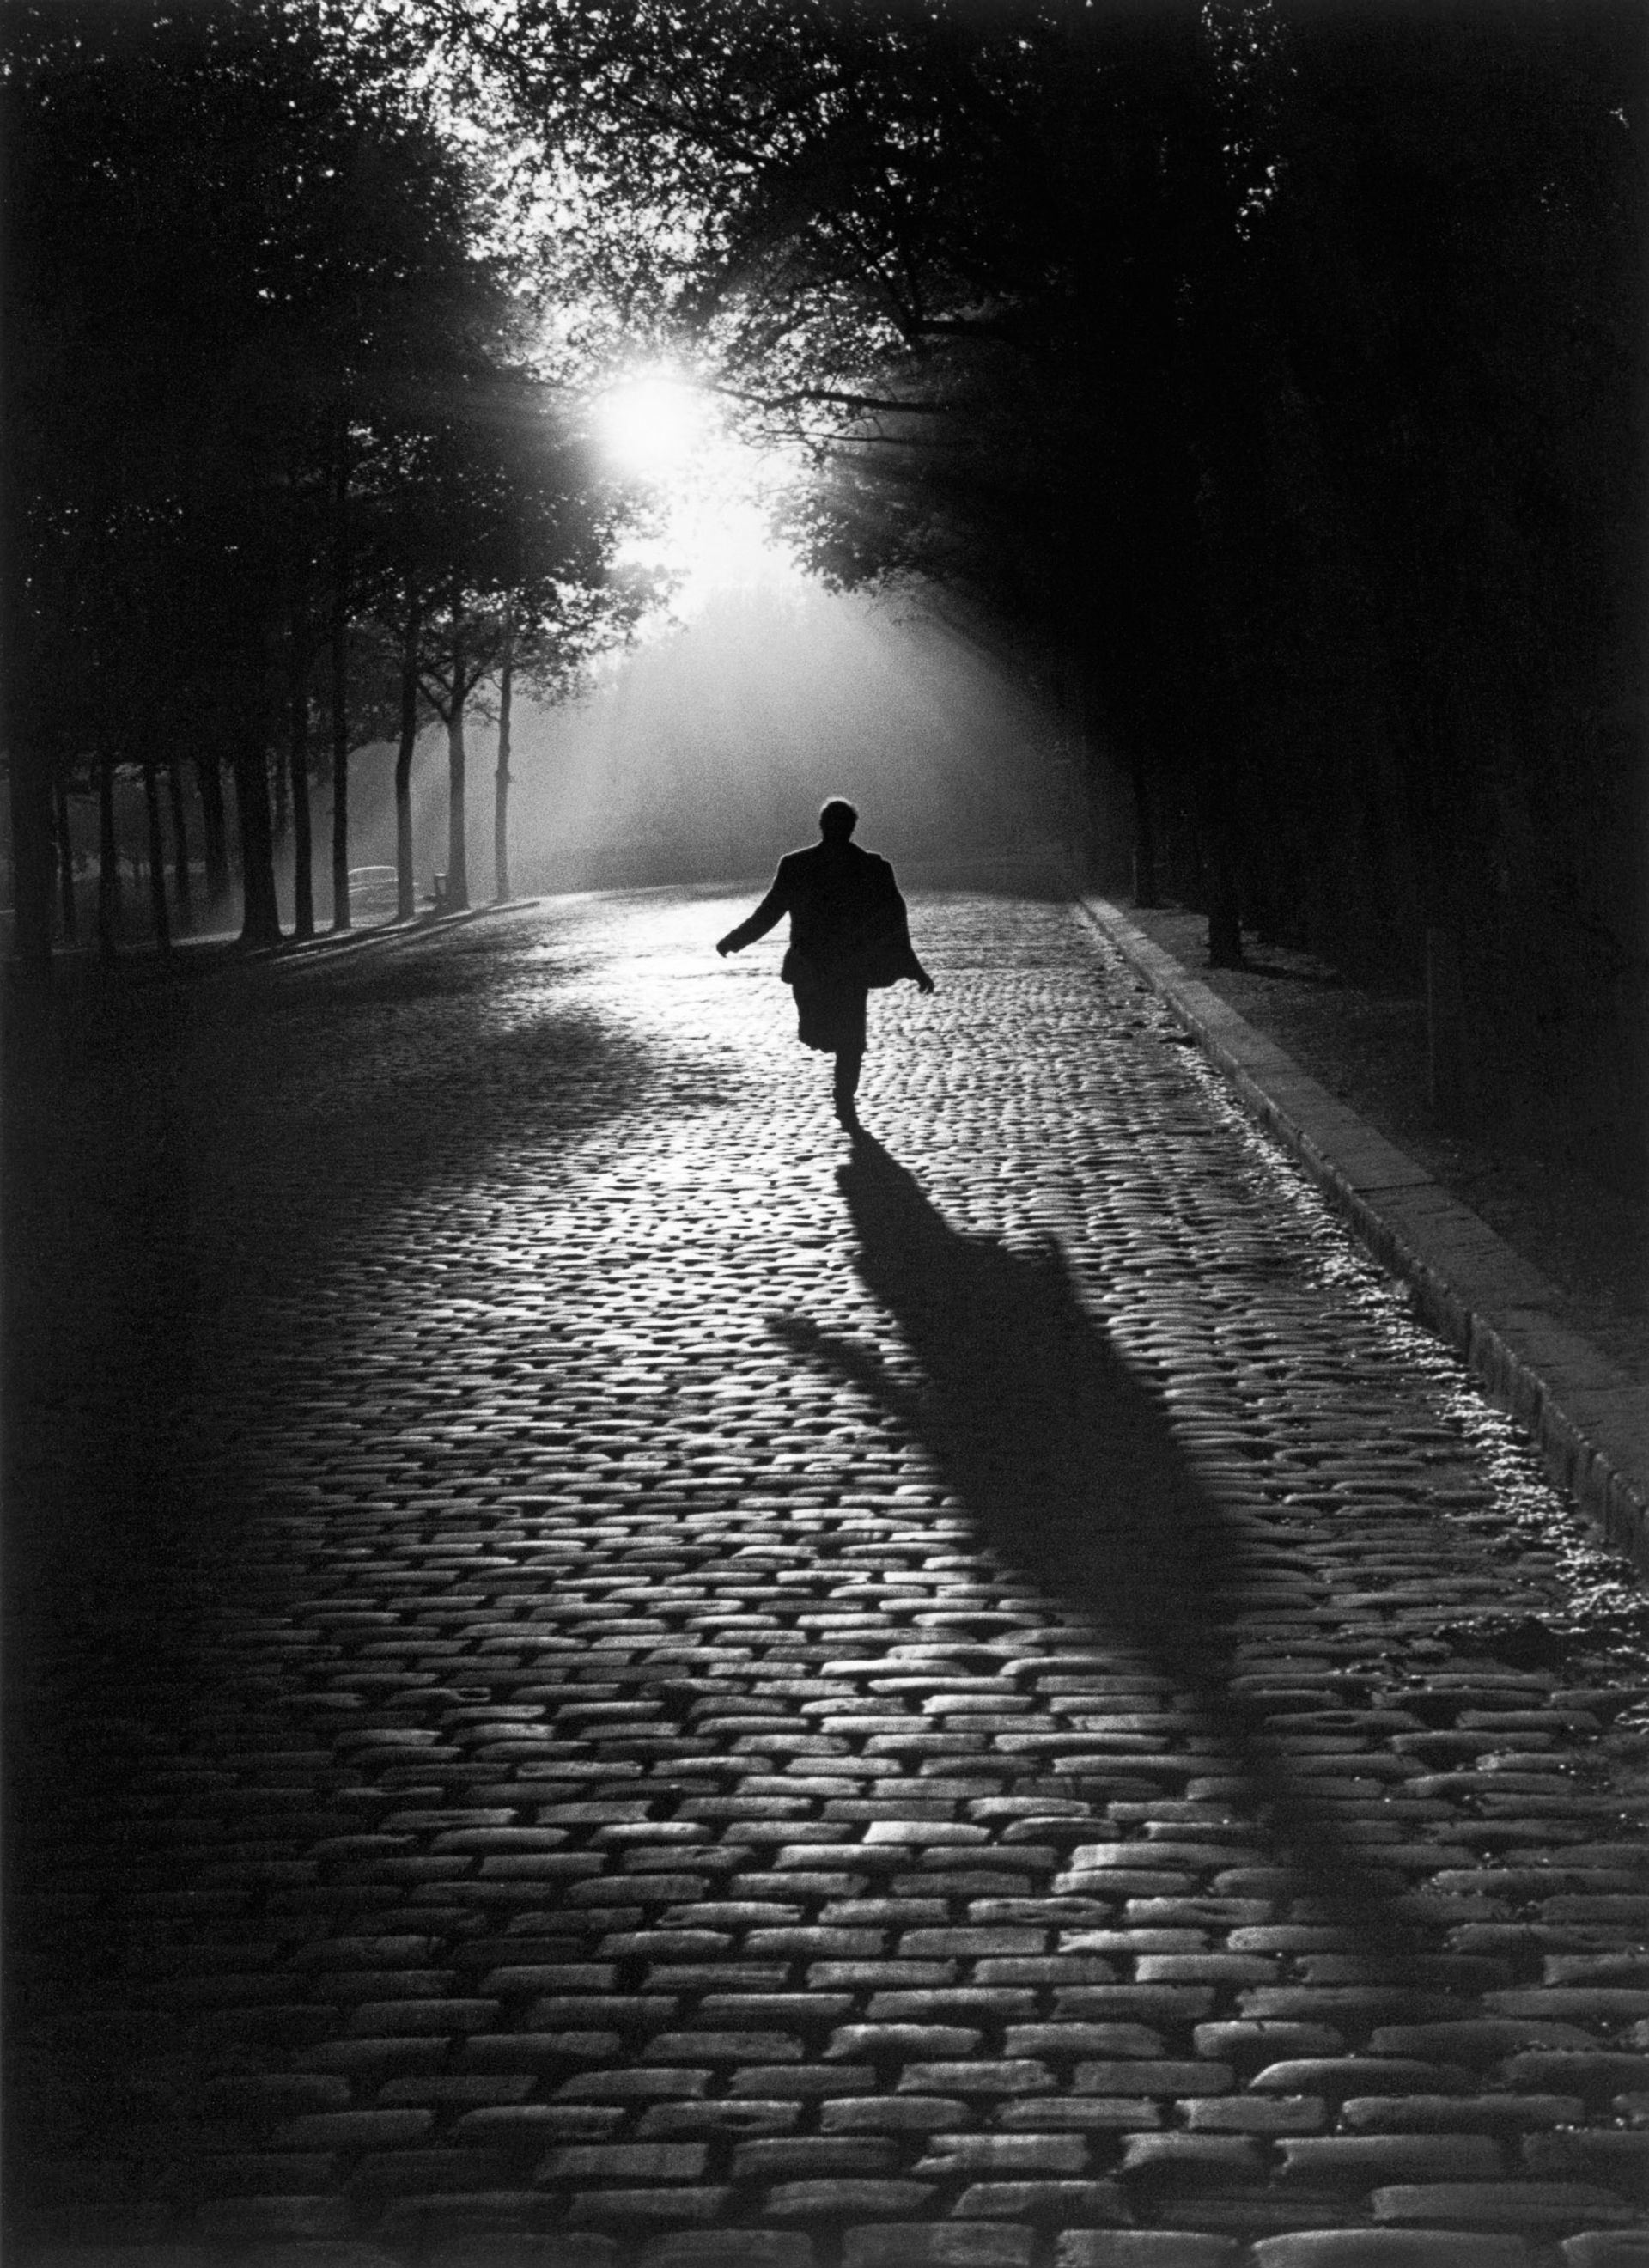 Sabine Weiss, L’Homme qui court, 1953, tirage gélatino-argentique postérieur. Prix : 2800 euros. © Sabine Weiss. Courtesy Les Douches la Galerie, Paris